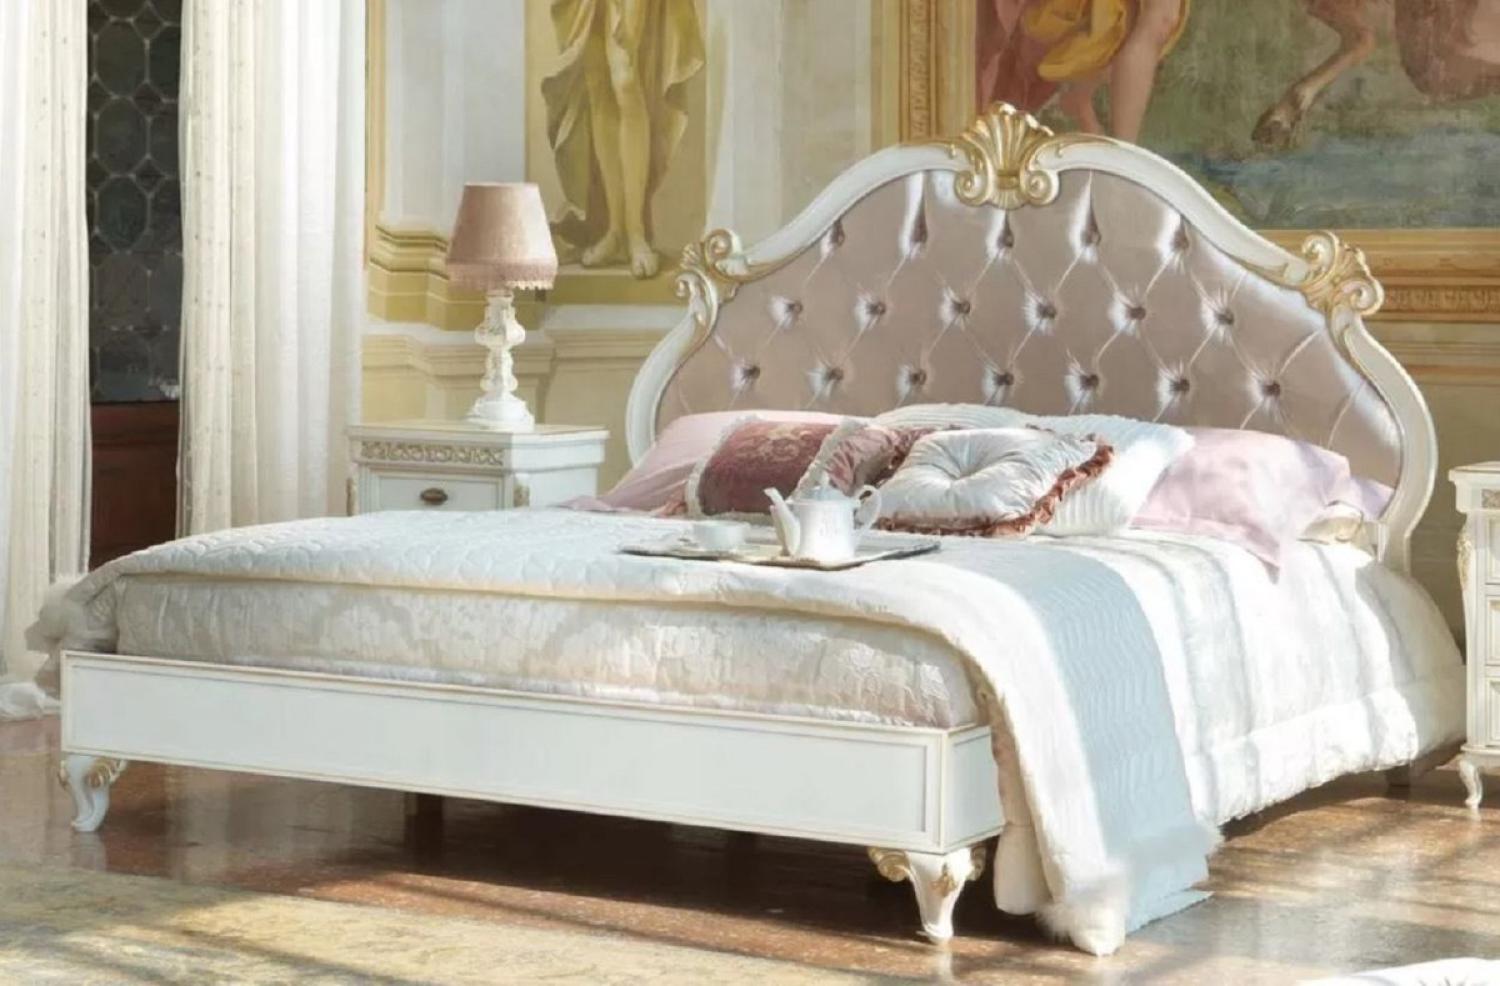 Casa Padrino Luxus Barock Doppelbett Rosa / Weiß / Gold - Prunkvolles Massivholz Bett - Barock Schlafzimmer Möbel - Luxus Qualität - Made in Italy Bild 1